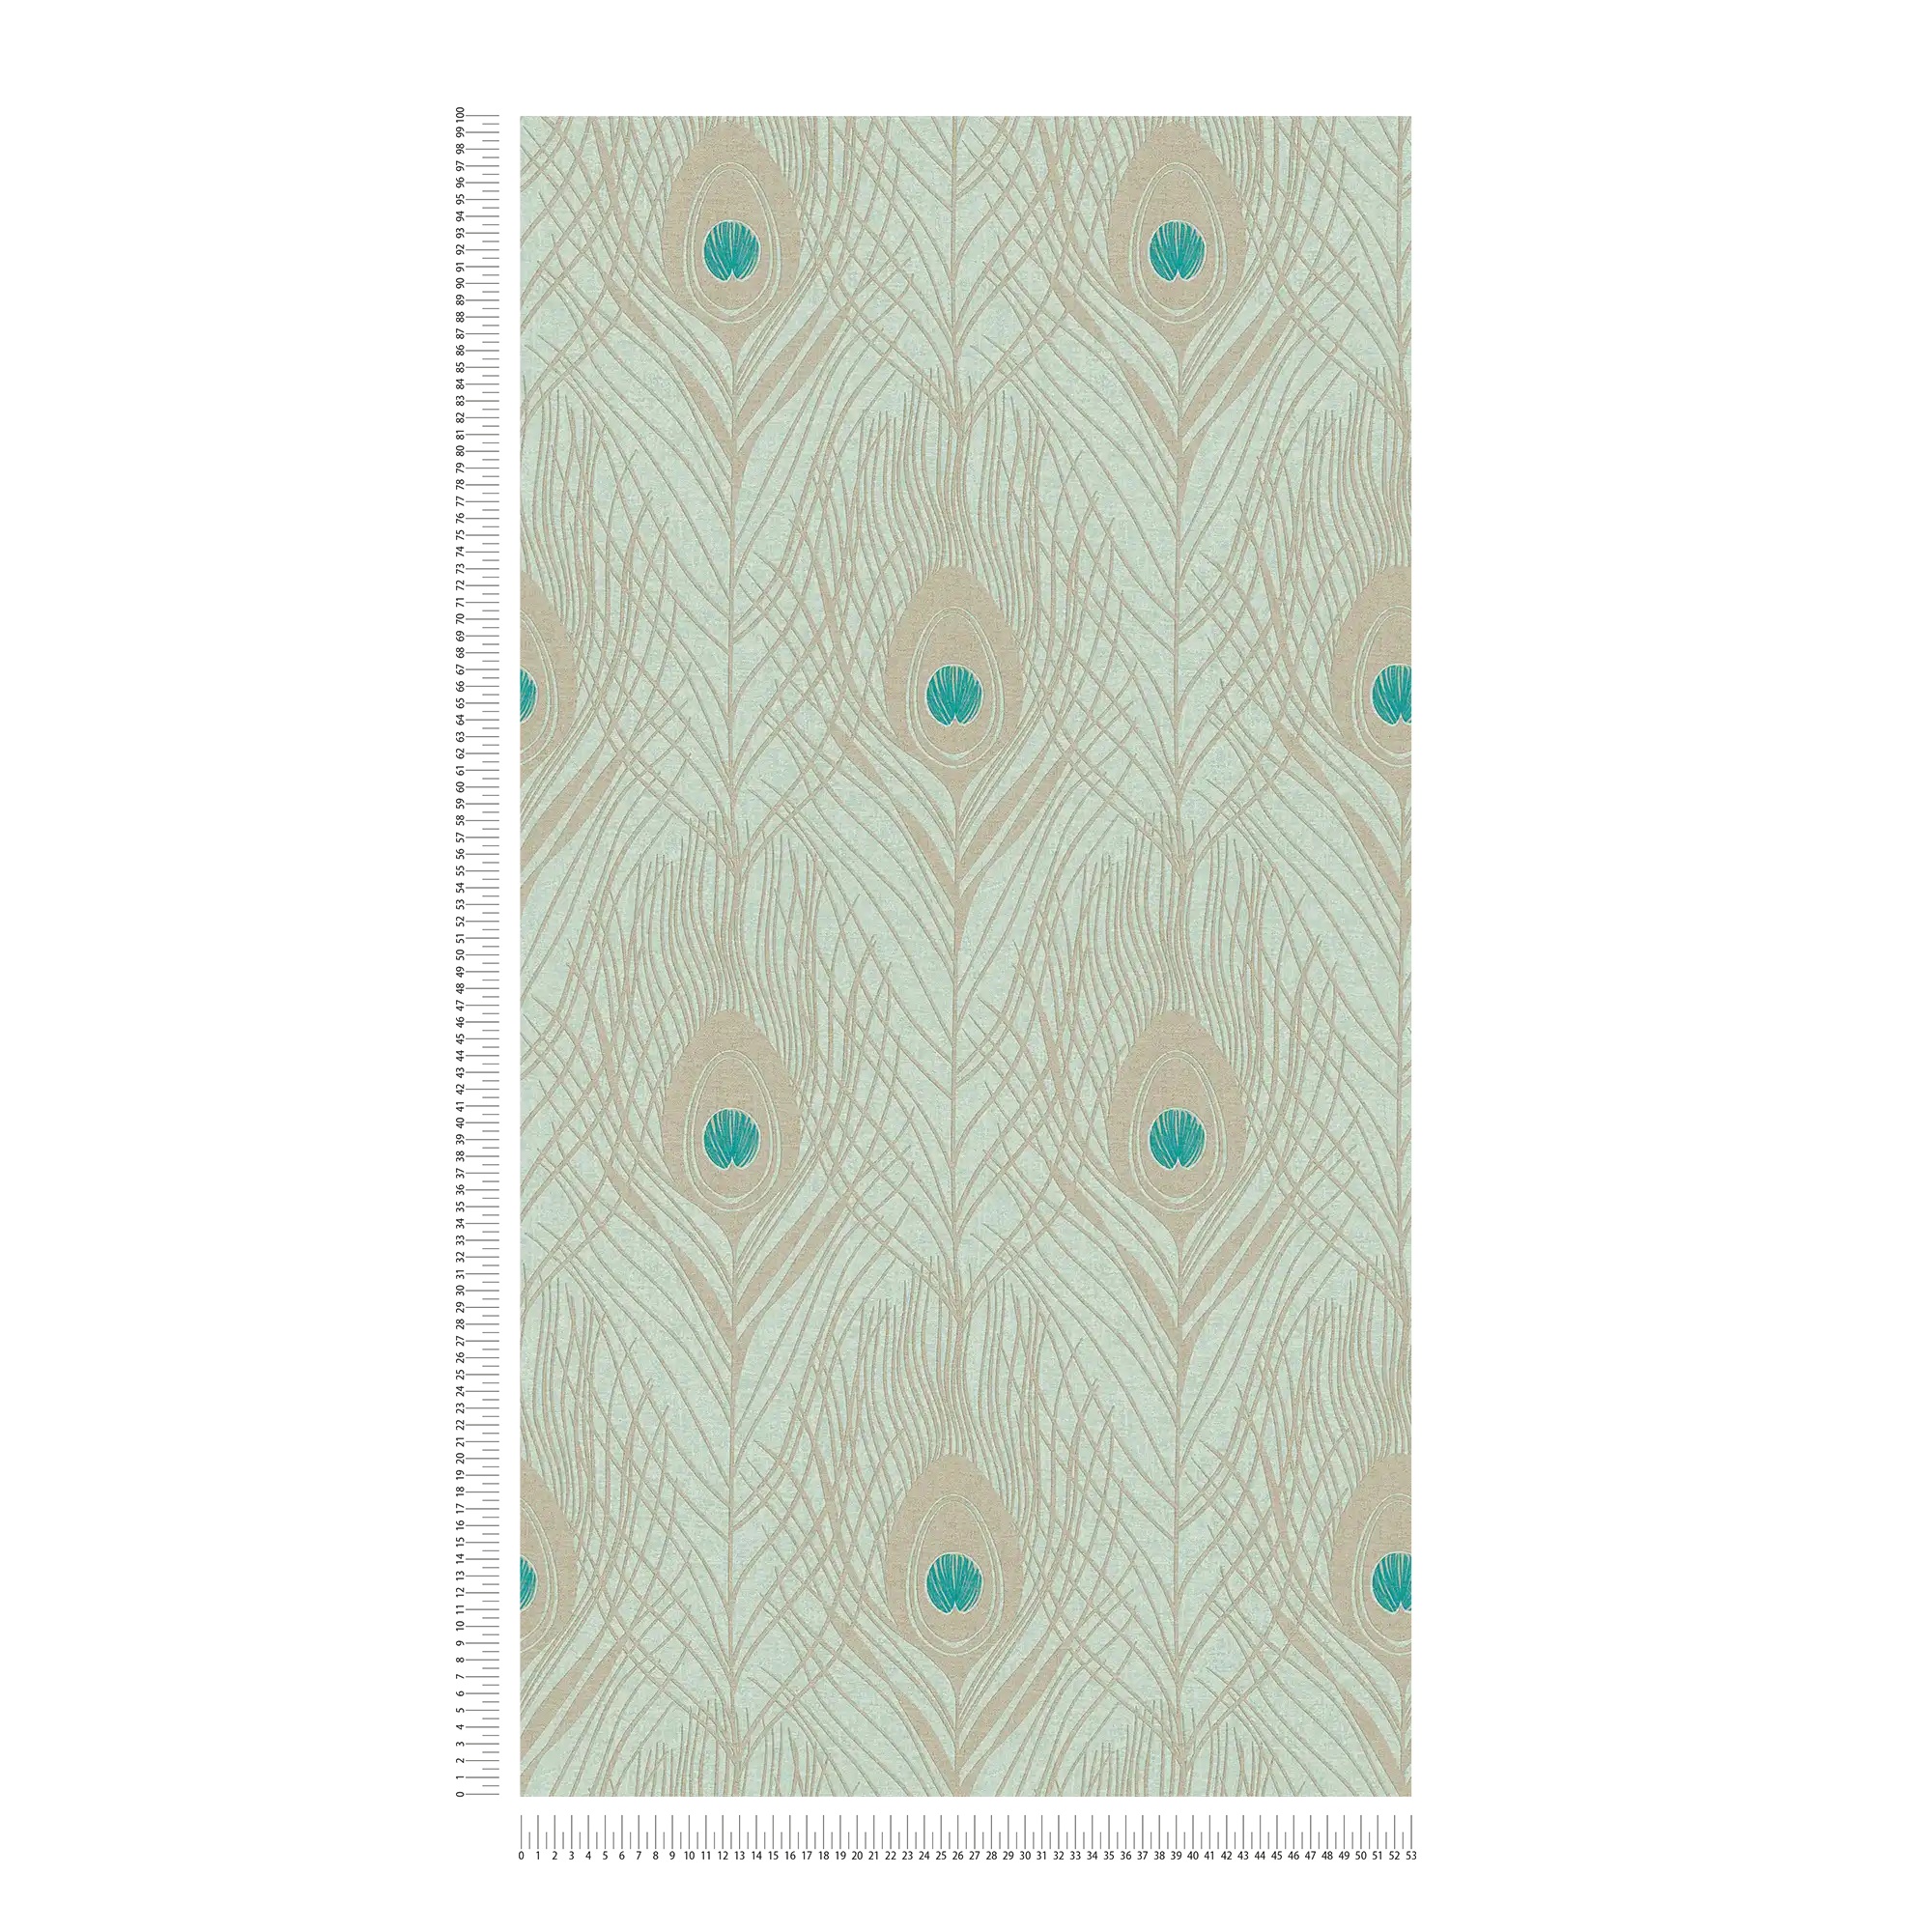             Carta da parati in tessuto non tessuto verde chiaro con piume di pavone dall'aspetto metallico - verde, blu, oro
        